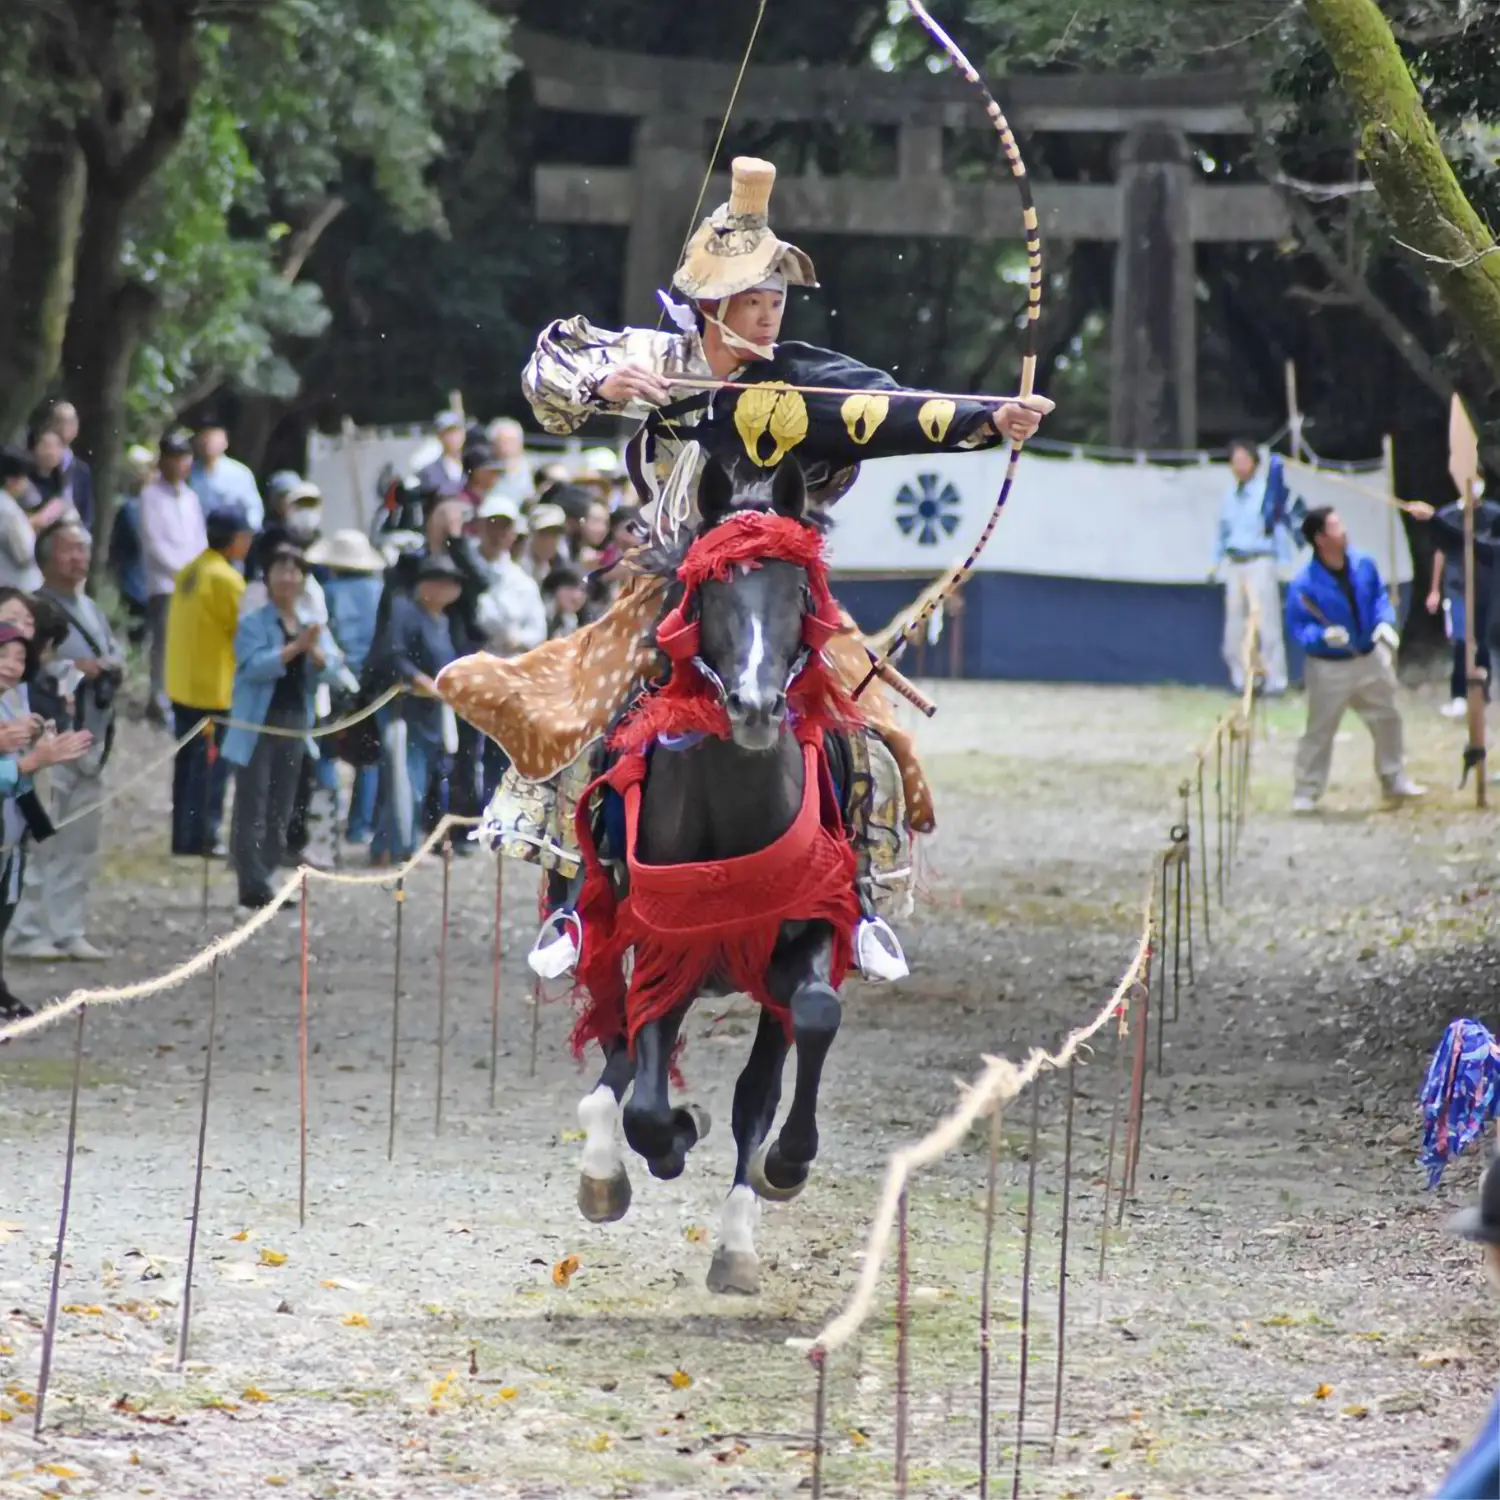 Découvrez la magie du festival annuel REITA-Sai à Kamakura, où l'art millénaire du tir à l'arc japonais rencontre la grâce équestre. Plongez dans les rituels spirituels et la parade traditionnelle du 15 septembre, puis assistez à la performance époustouflante de tir à l'arc à cheval le 16 septembre. Un voyage unique à travers l'histoire et la